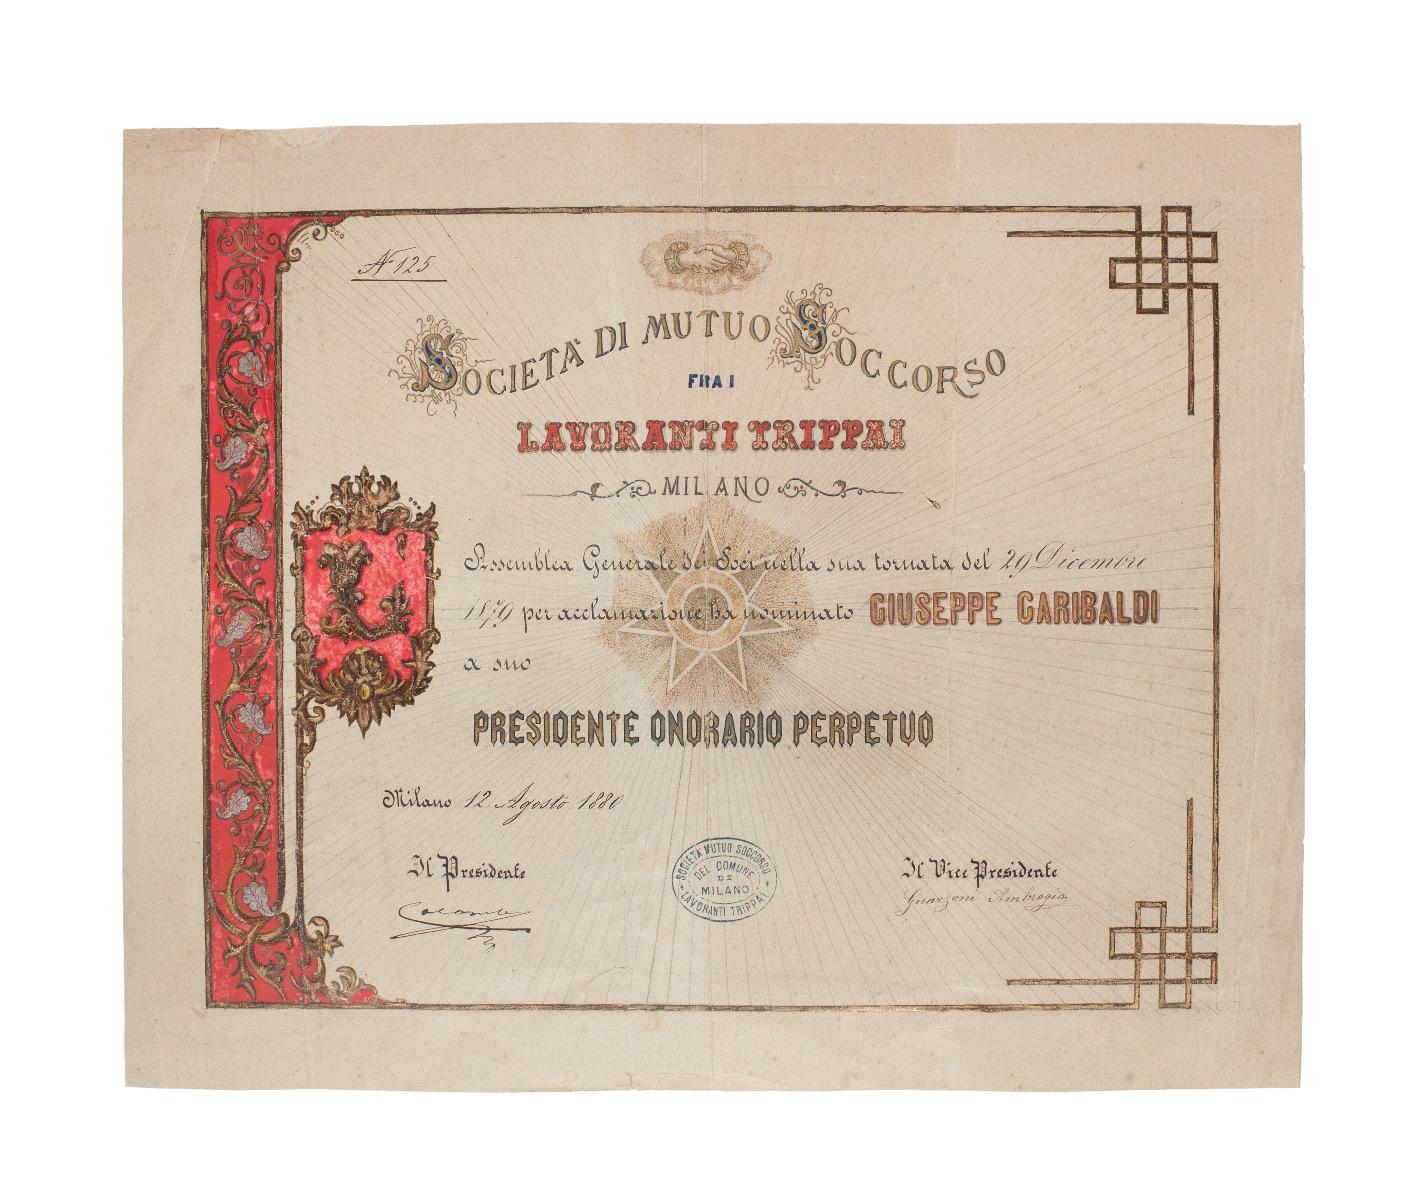 Original Appointment of G. Garibaldi to the "Società di Mutuo Soccorso" - 1879 - Art by Unknown